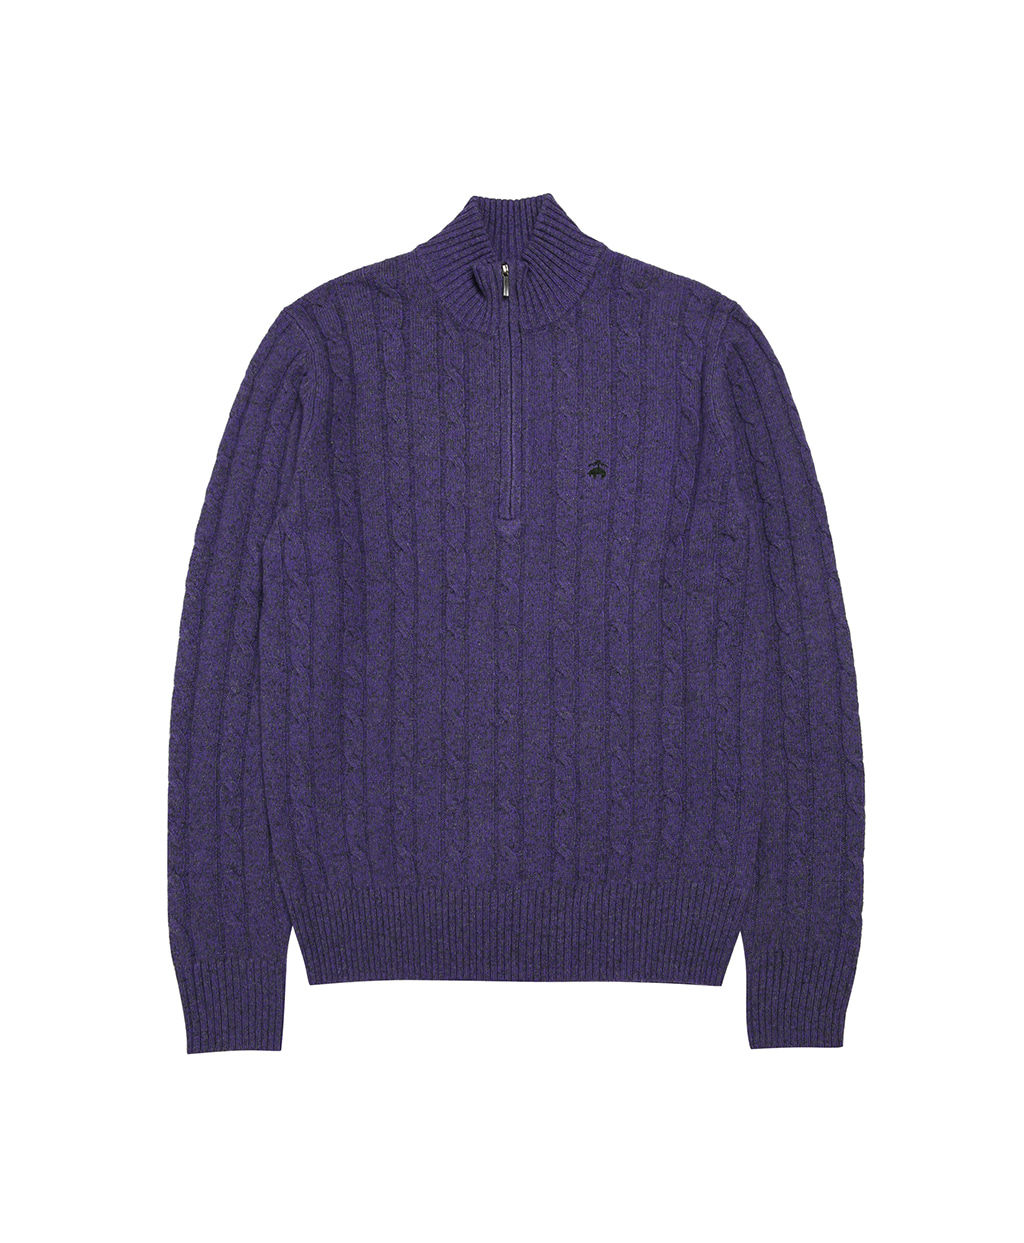 로고 케이블 하프 집업 스웨터 (퍼플)